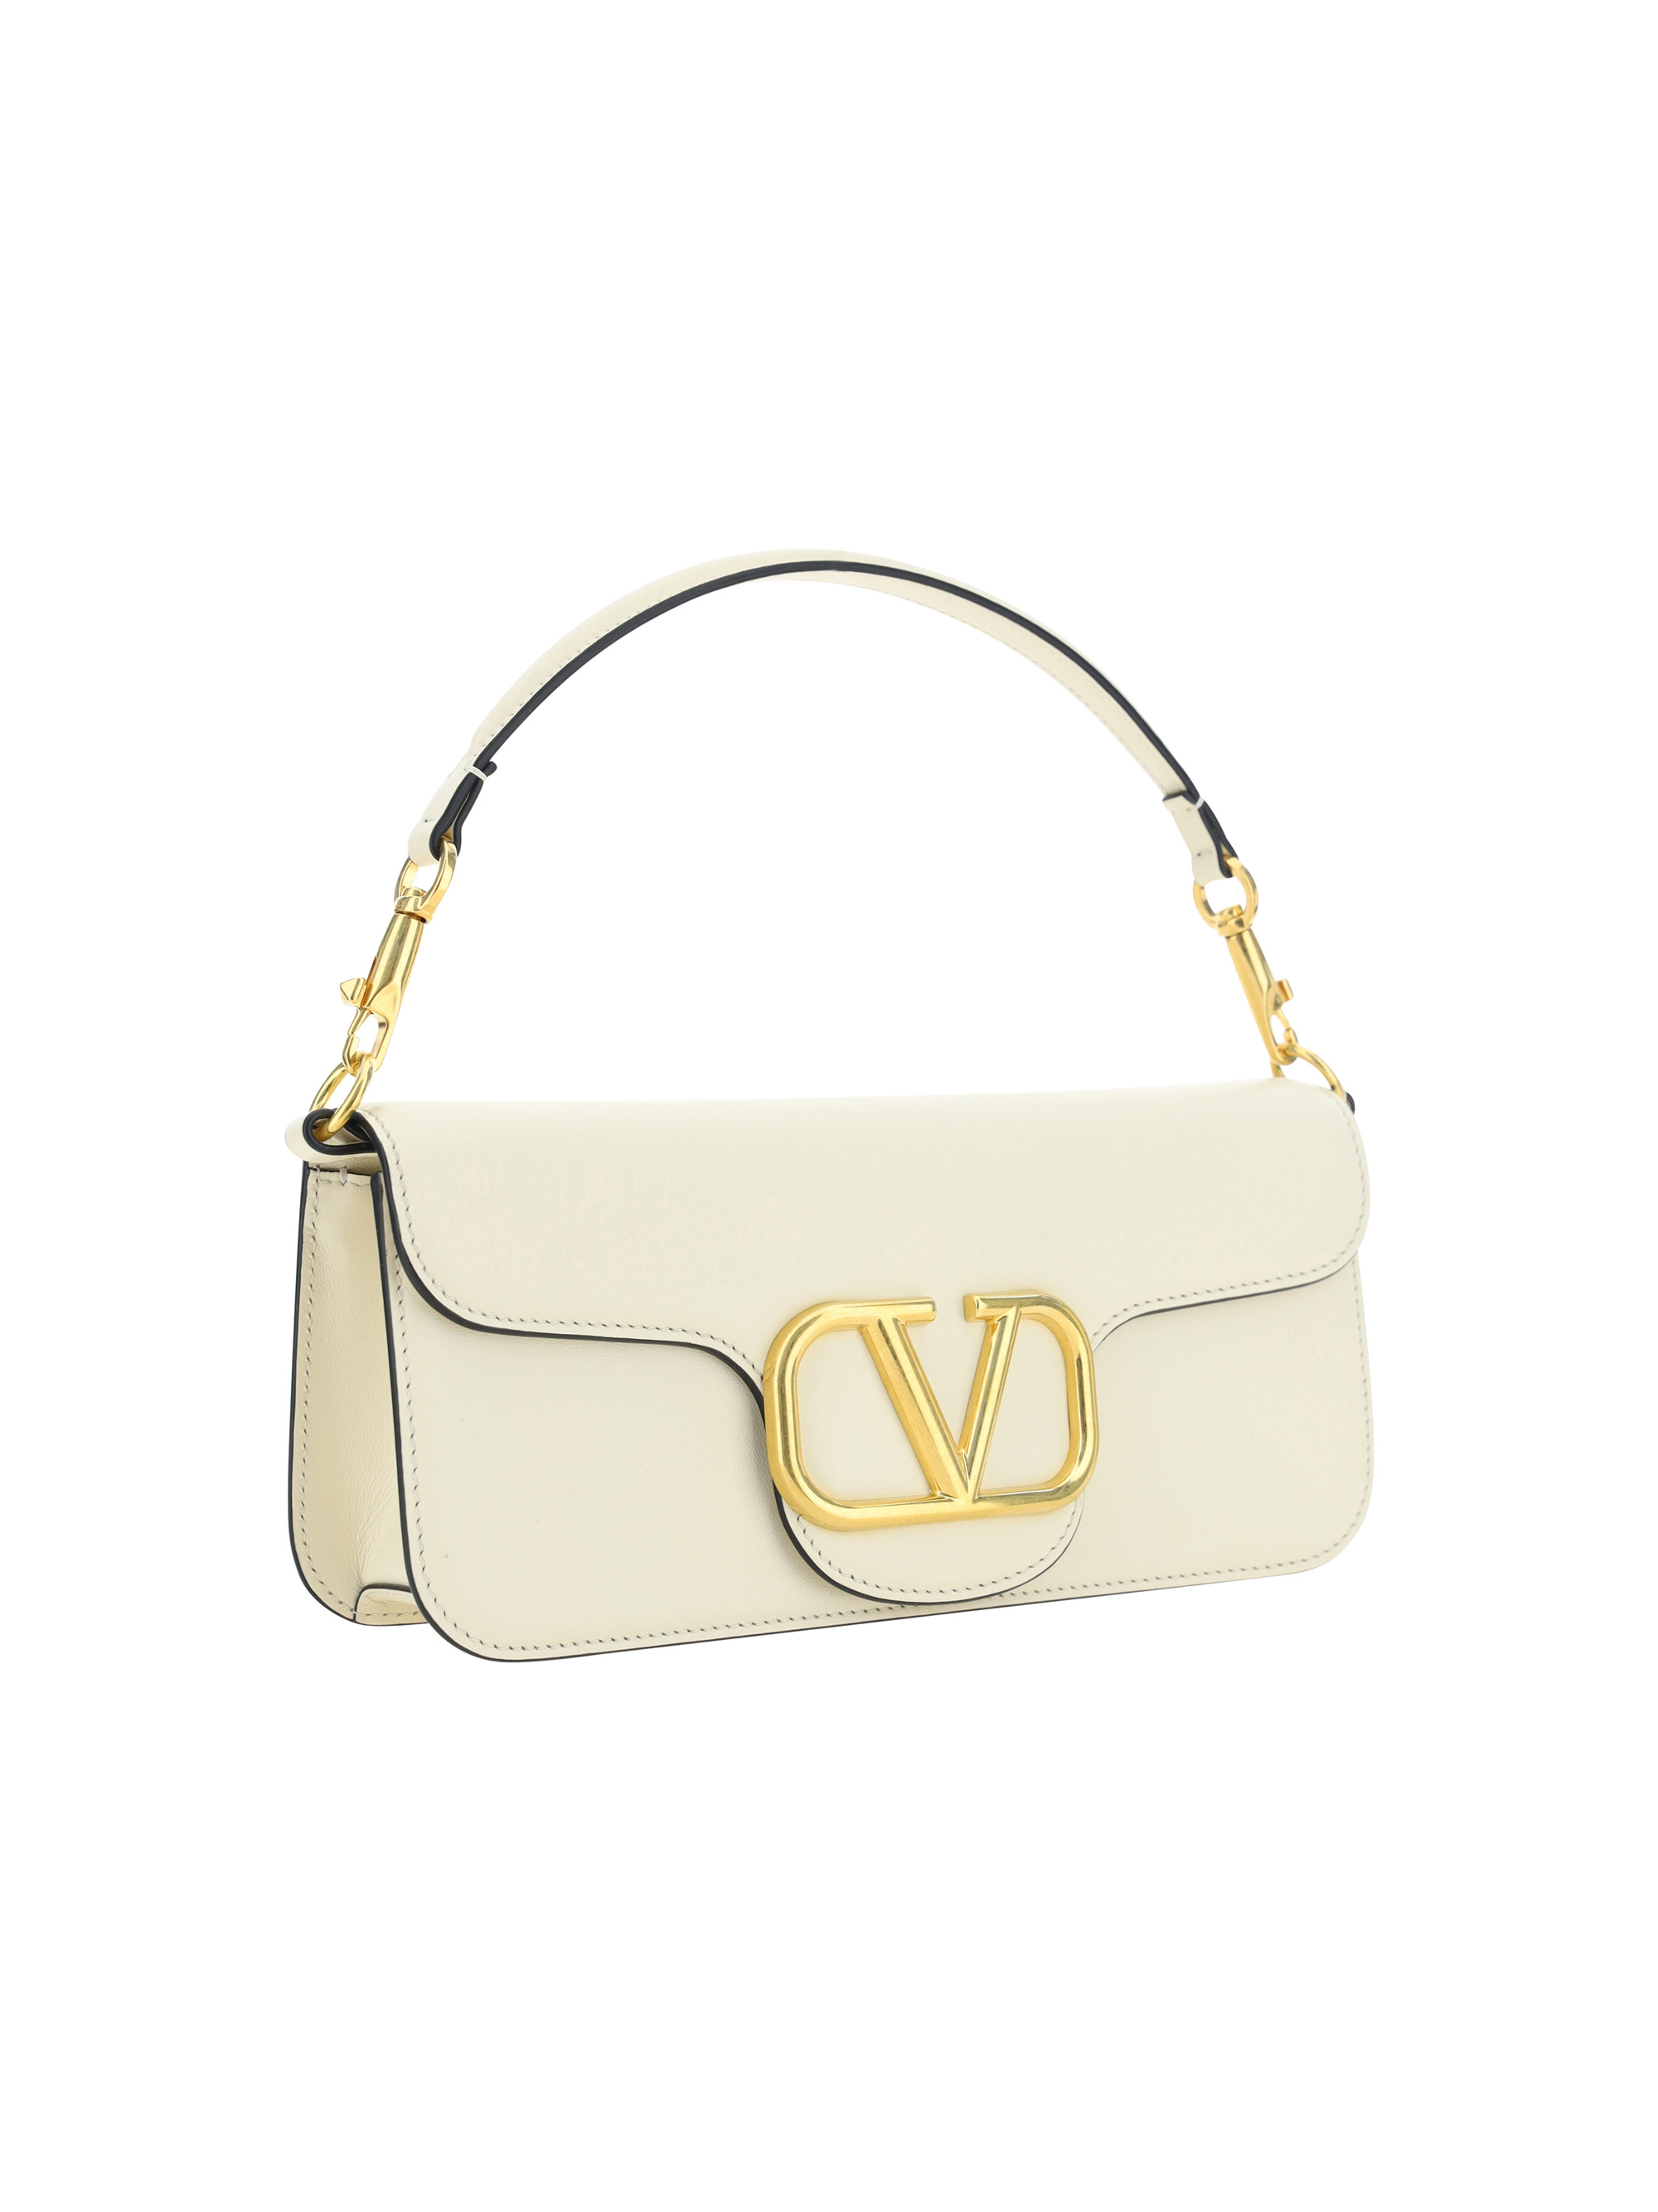 Loco Small Leather Shoulder Bag in White - Valentino Garavani